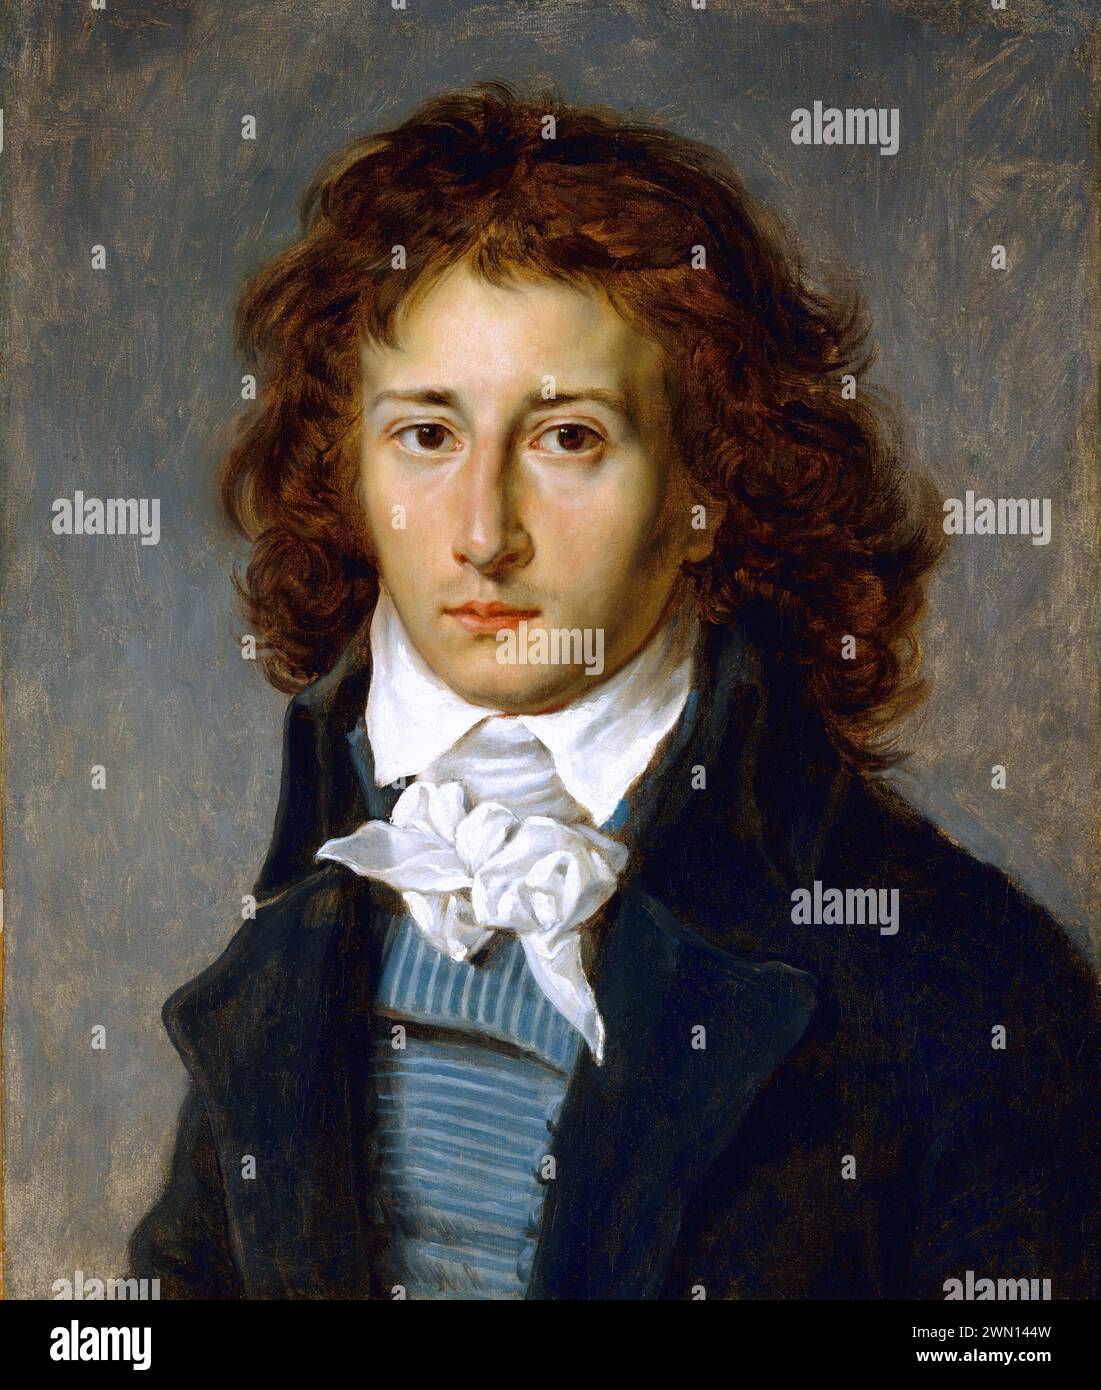 François Pascal Simon Gérard, 1770 – 1837, était un peintre français éminent, peinture à l'huile par l'artiste français Baron Antoine Jean gros, date : CA. 1790 Banque D'Images